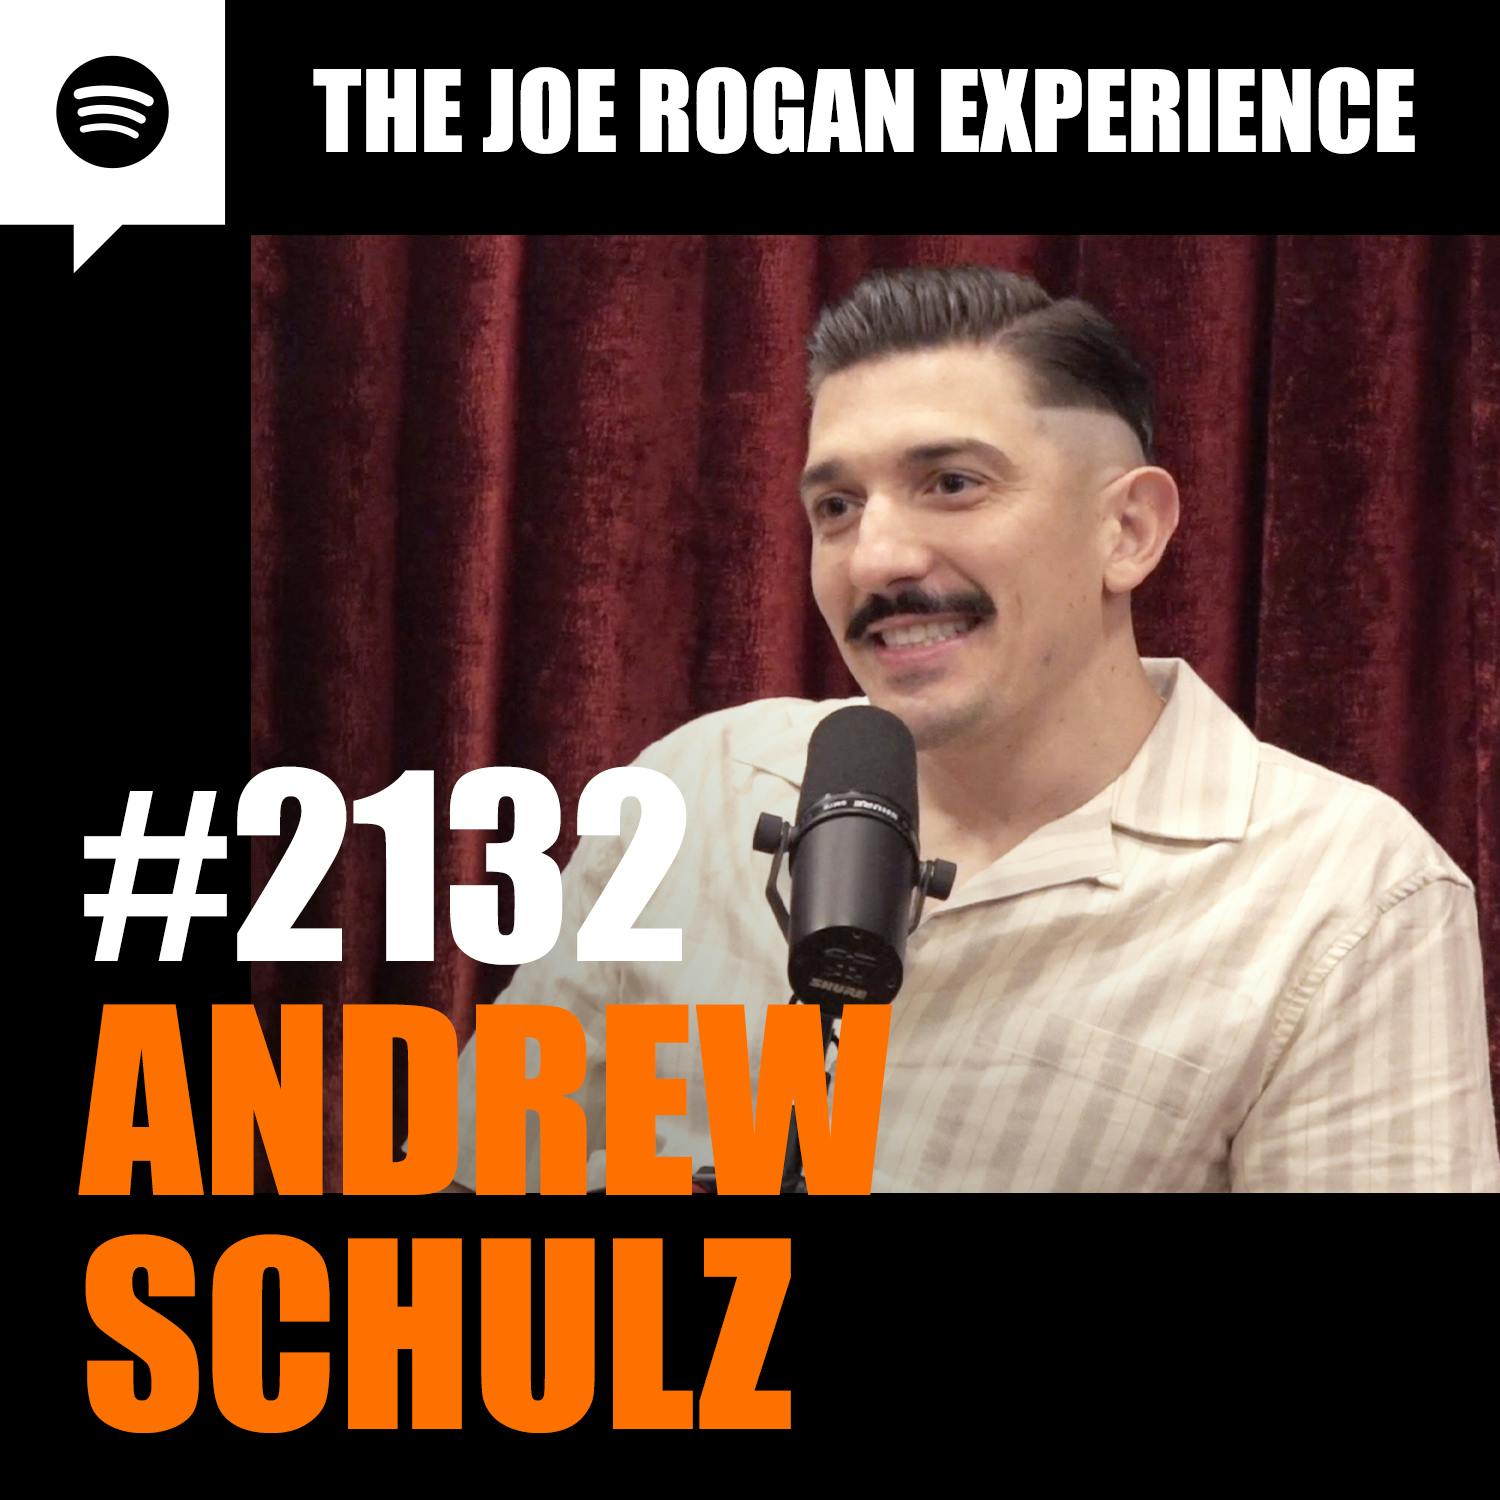 #2132 - Andrew Schulz